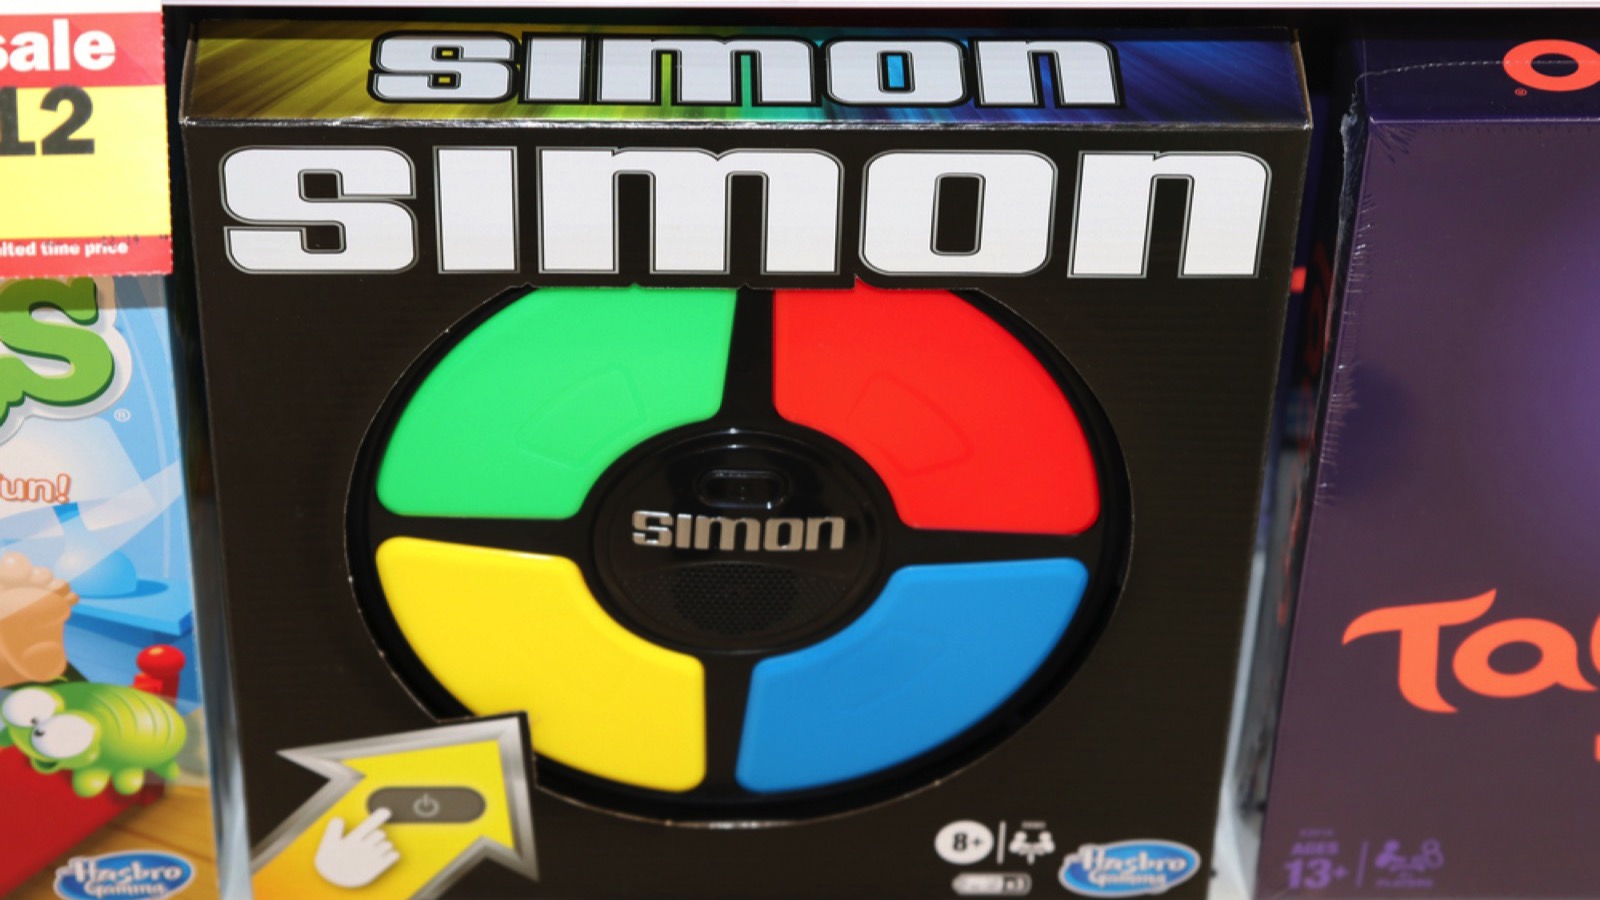 Simon Says game